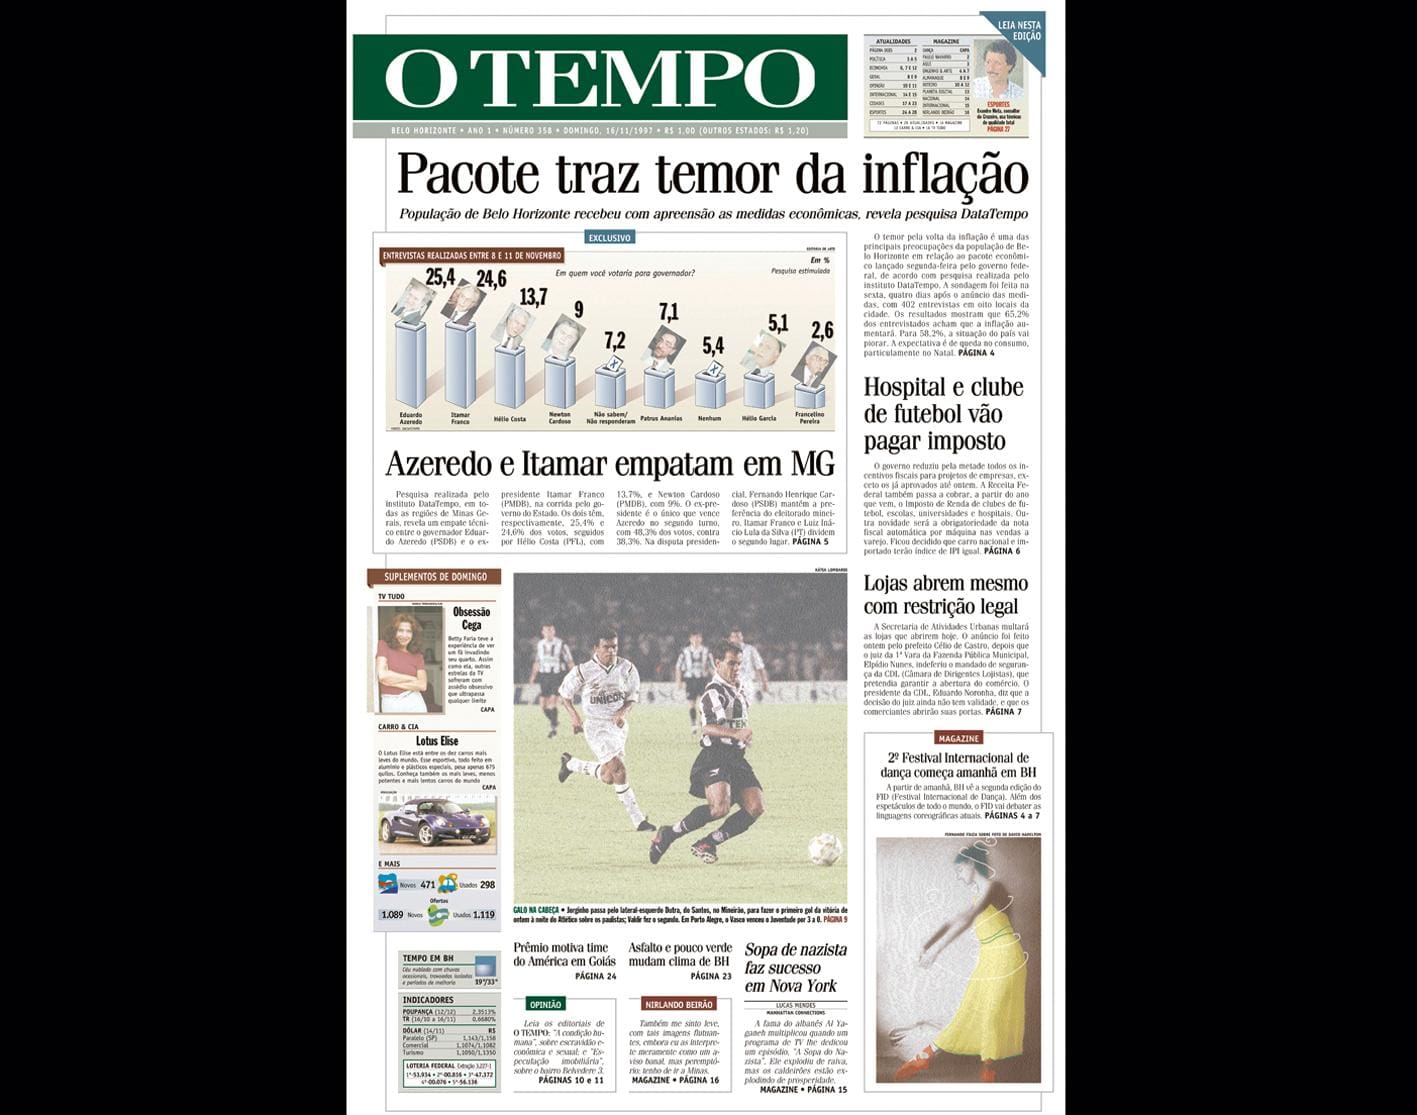 Capa do jornal O TEMPO no dia 16.11.1997; resgate do acervo marca as comemorações dos 25 anos da publicação